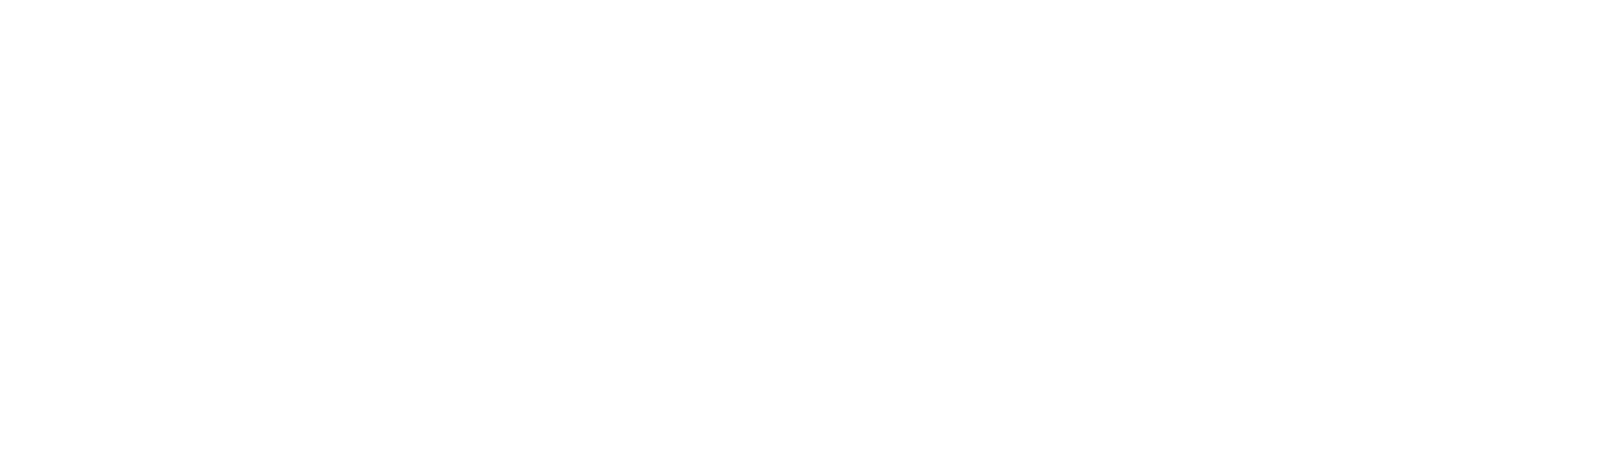 Trane Technologies
 Logo groß für dunkle Hintergründe (transparentes PNG)